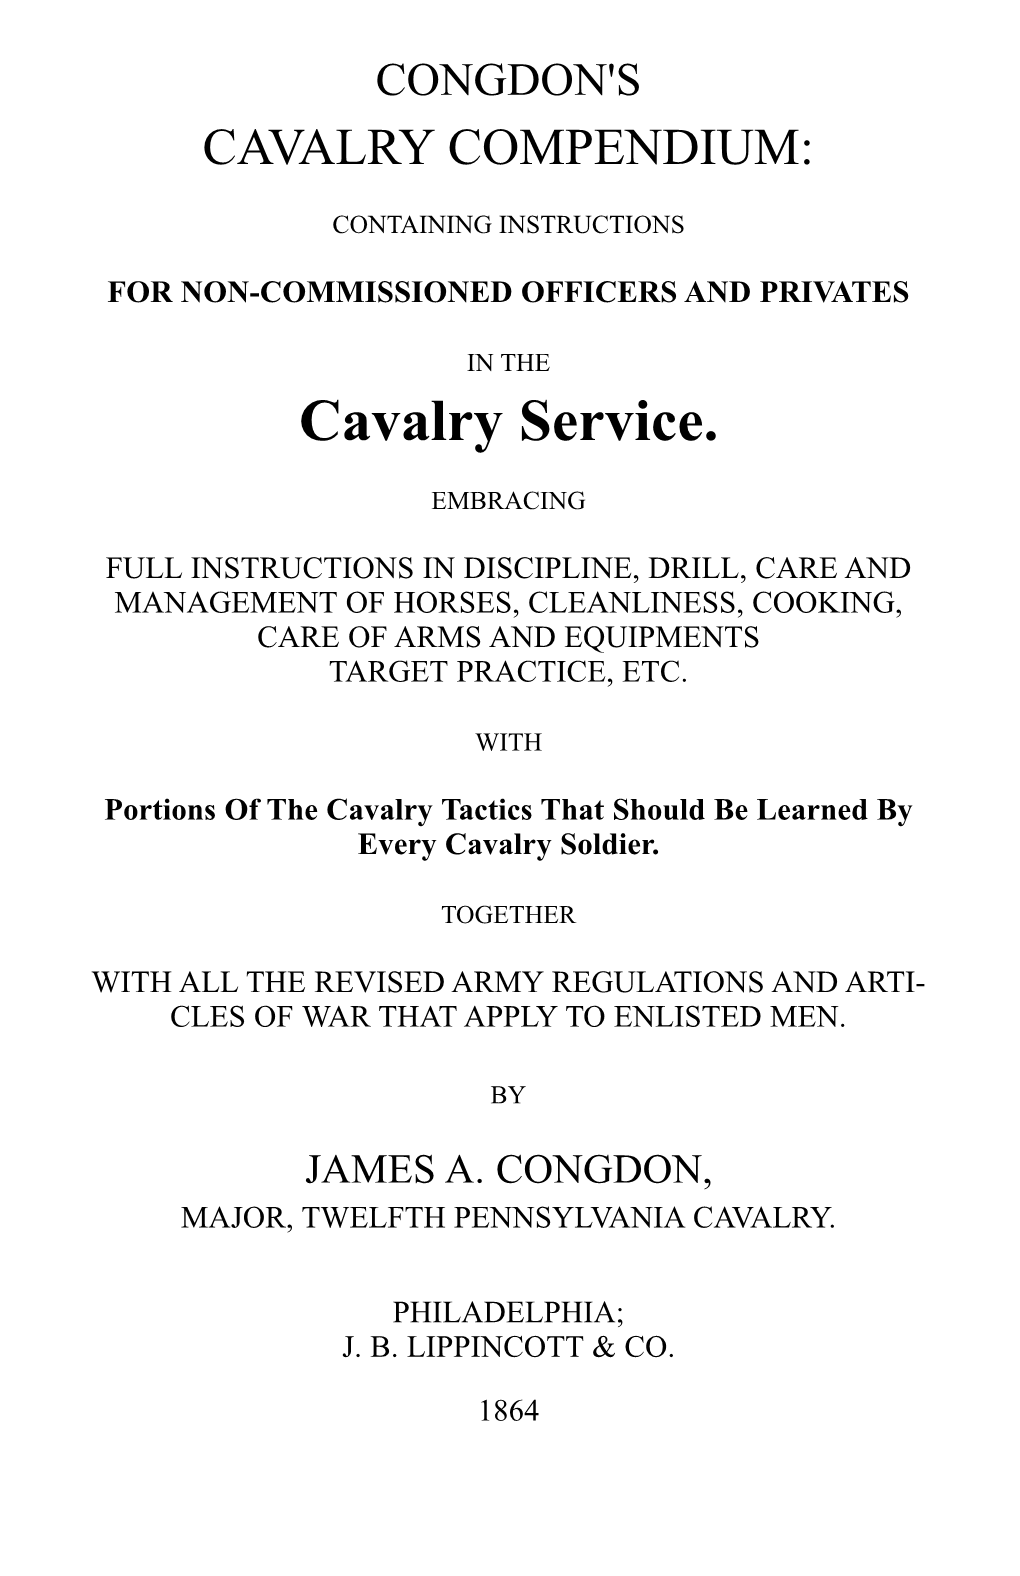 Congdons Cavalry Compendium